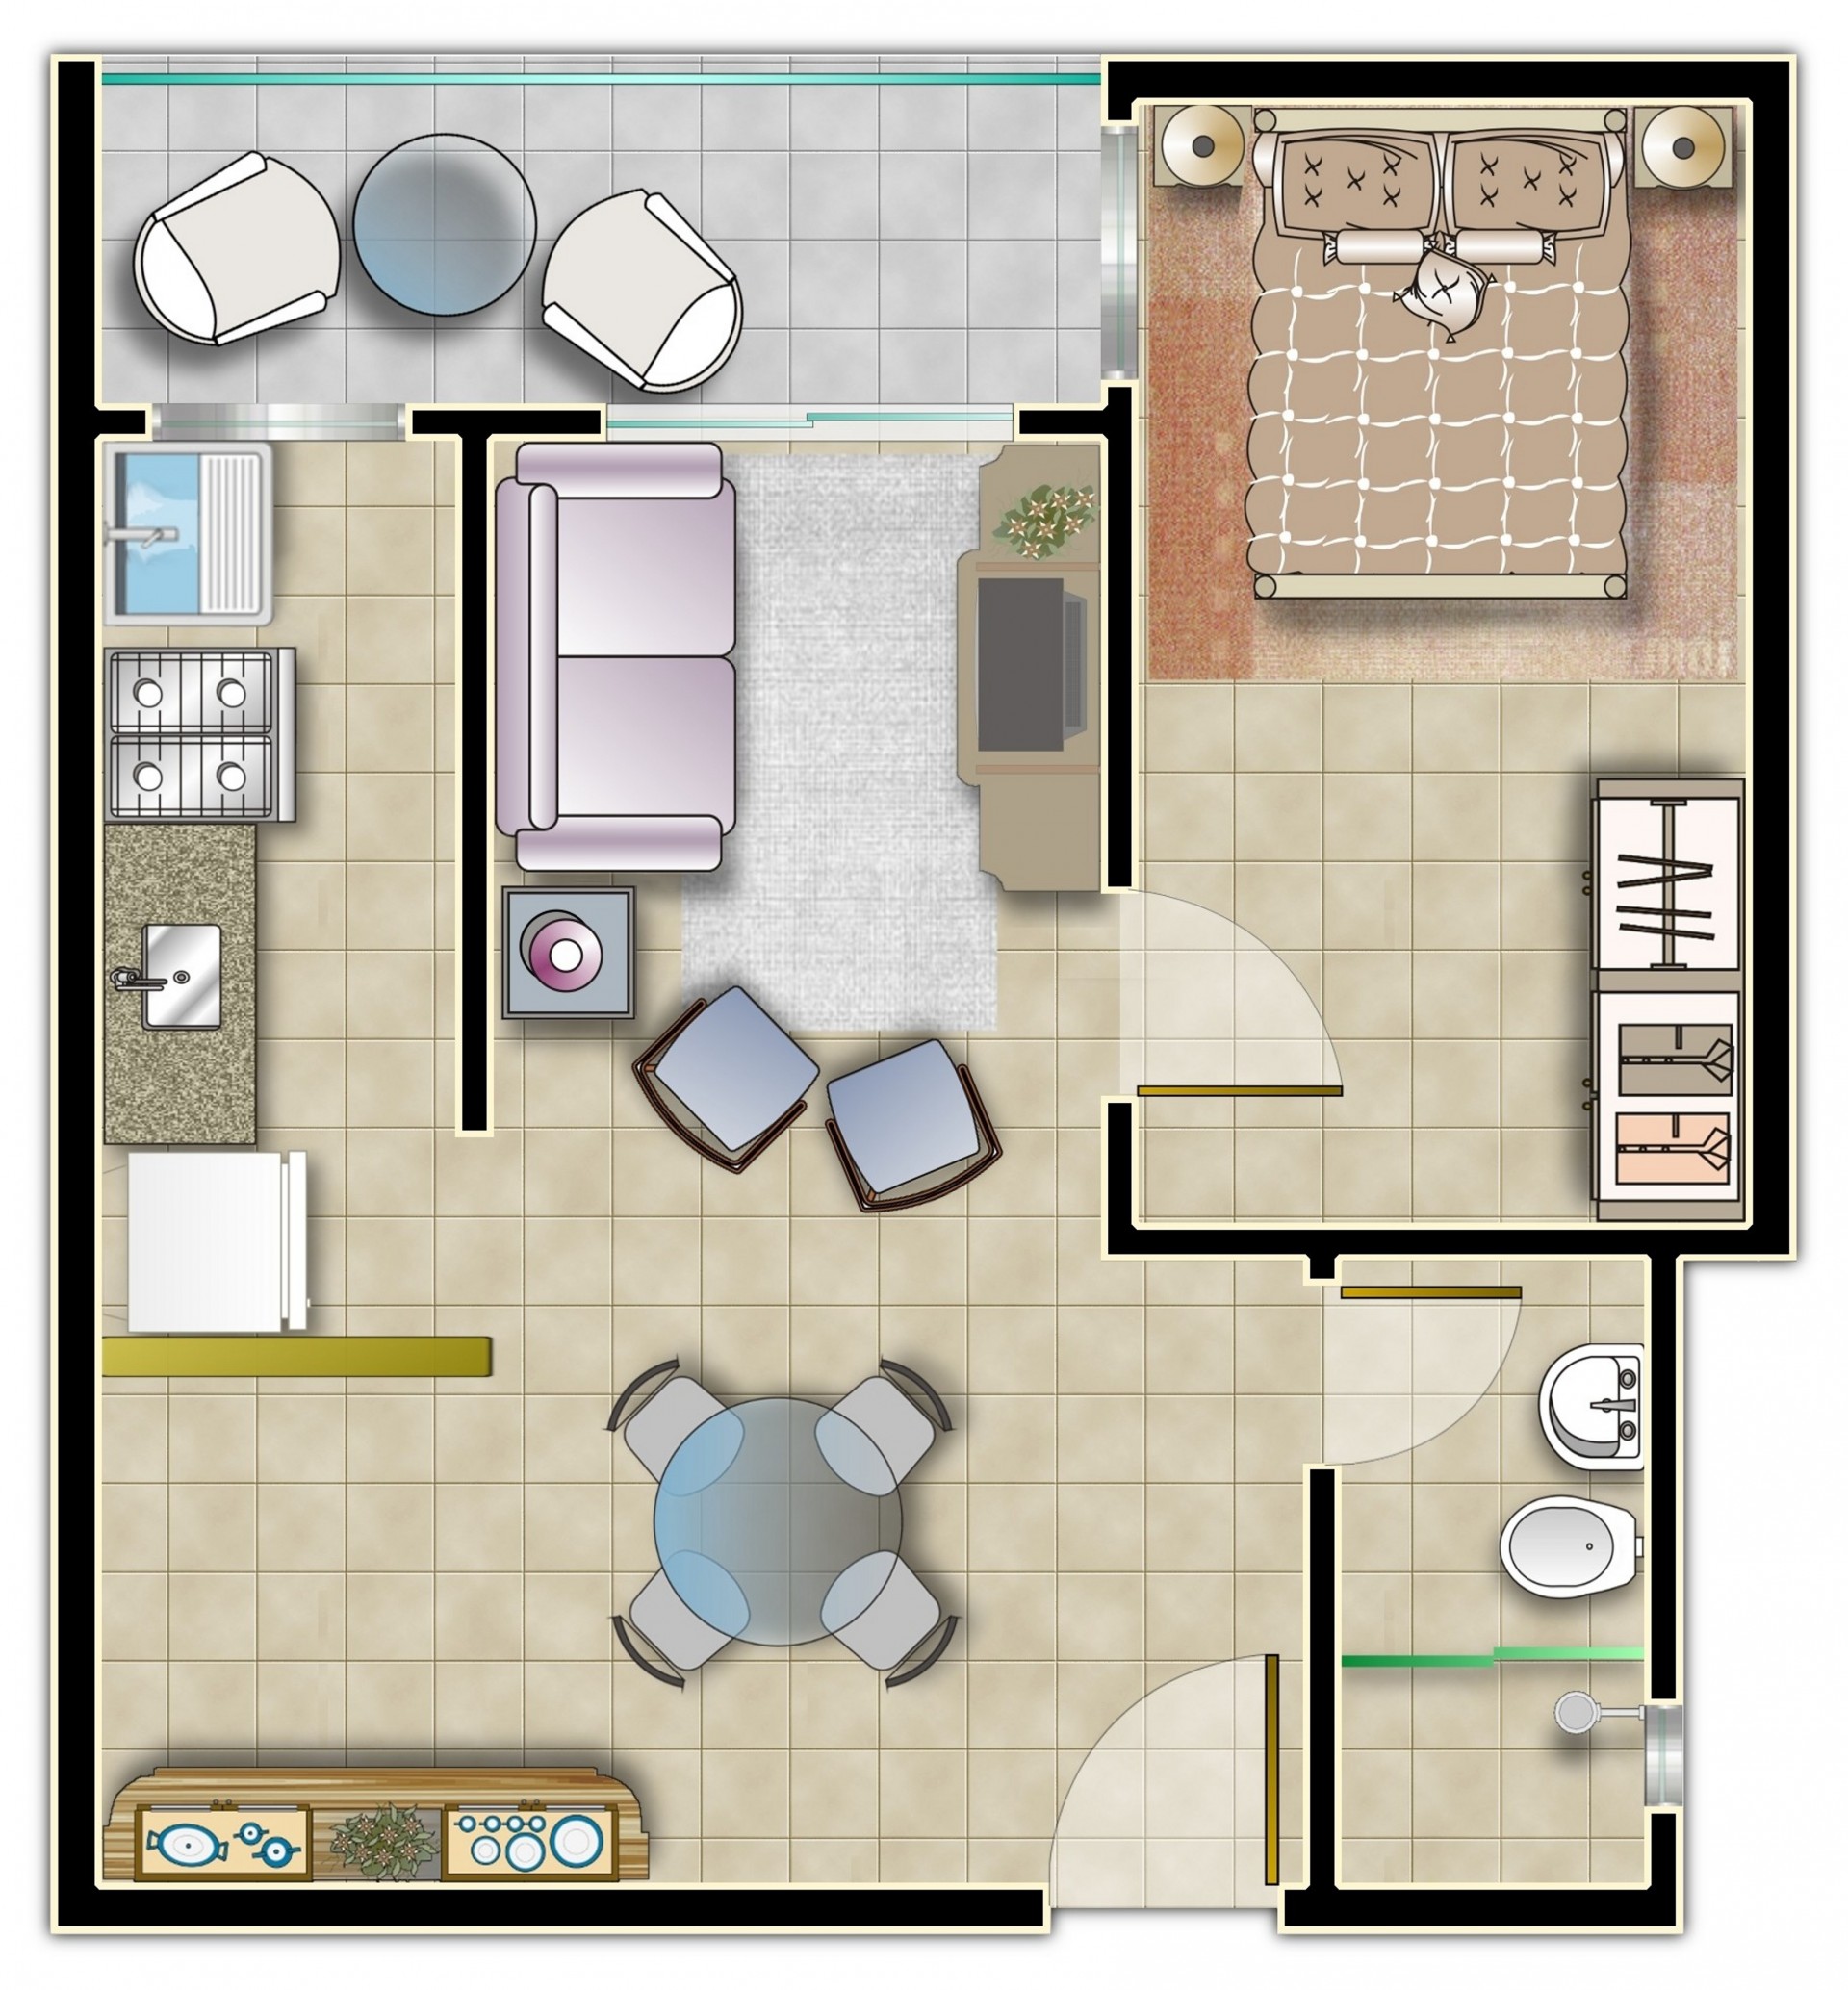 Apartamento com 1 dormitórios - Lateral